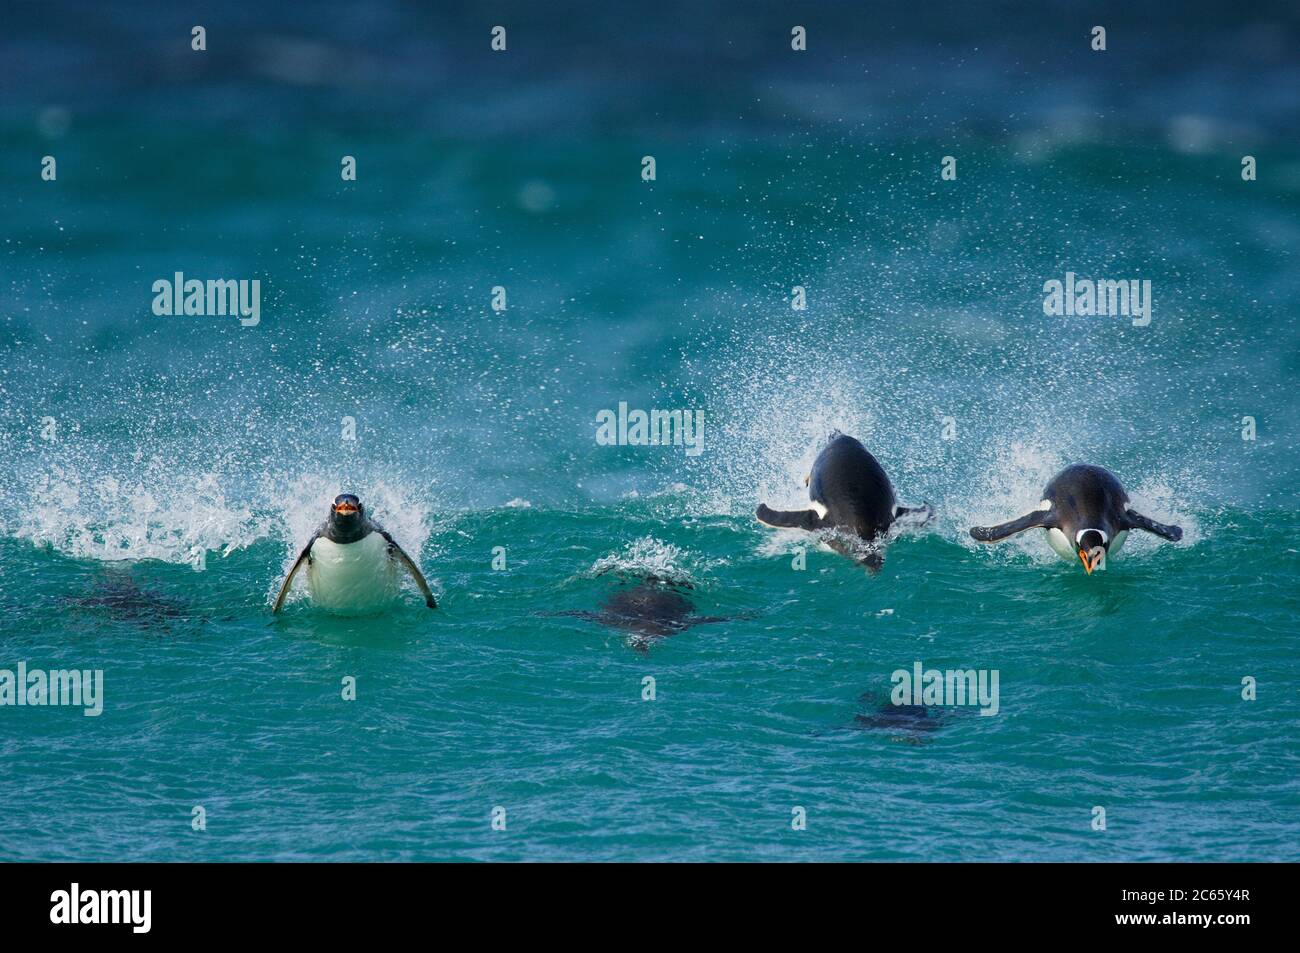 Con una velocità di nuoto fino a 30 km/h il pinguino Gentoo (Pigoscelis papua) è il digiuno tra i pinguini. Porpoising è un modo molto efficiente di viaggiare ad alta velocità, in quanto l'animale sfrutta la minore resistenza in aria che sott'acqua ed è in grado di respirare con il becco aperto. [dimensioni del singolo organismo: 75 cm] Foto Stock